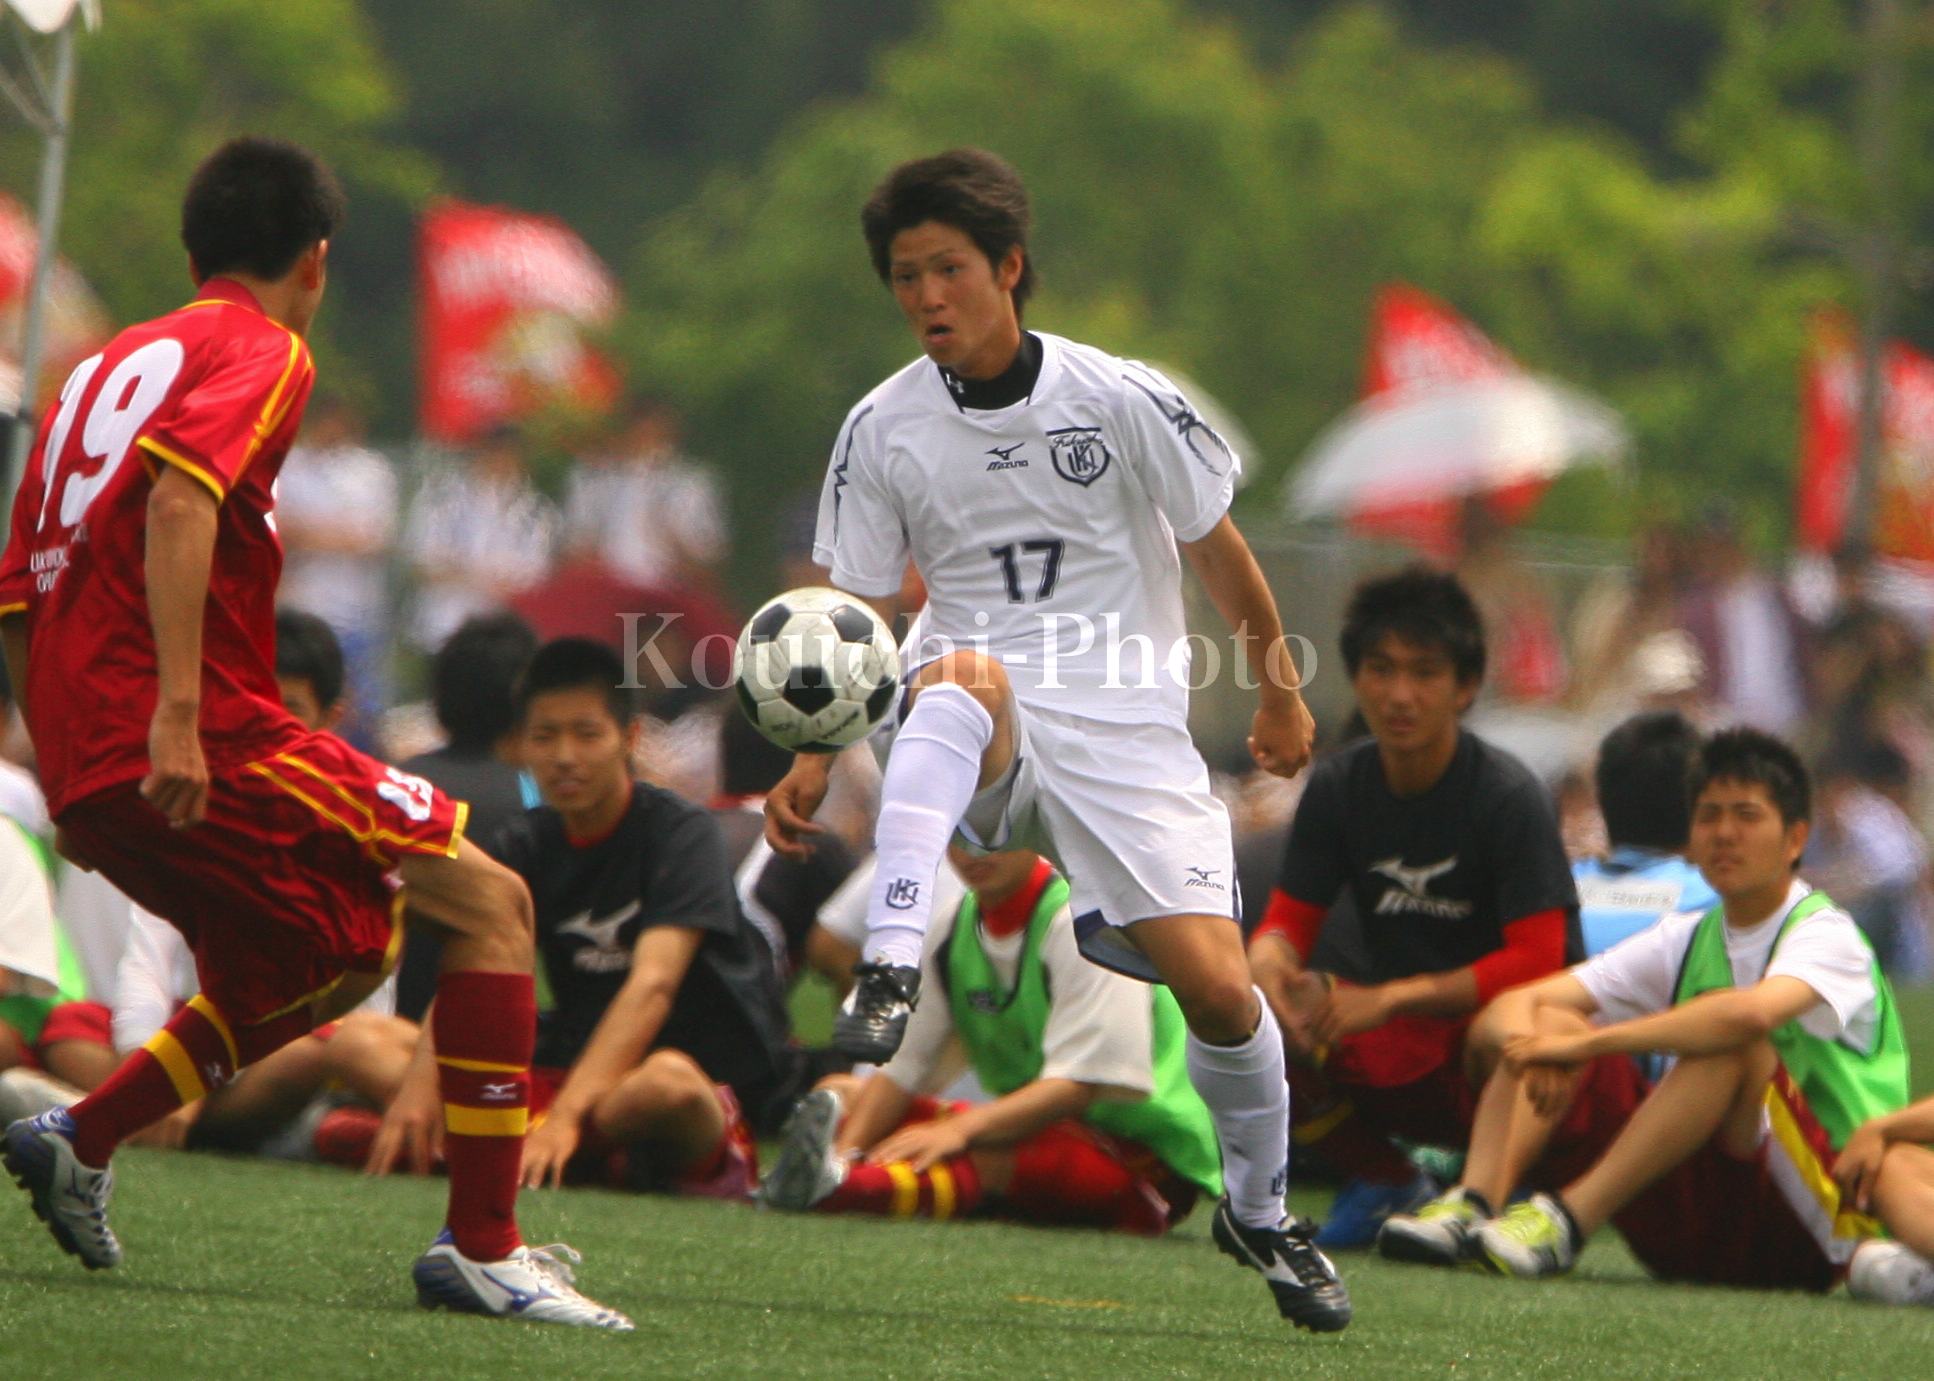 九州国際大学付属高校 Koichi Photo 福岡県高校サッカーフォトメディア